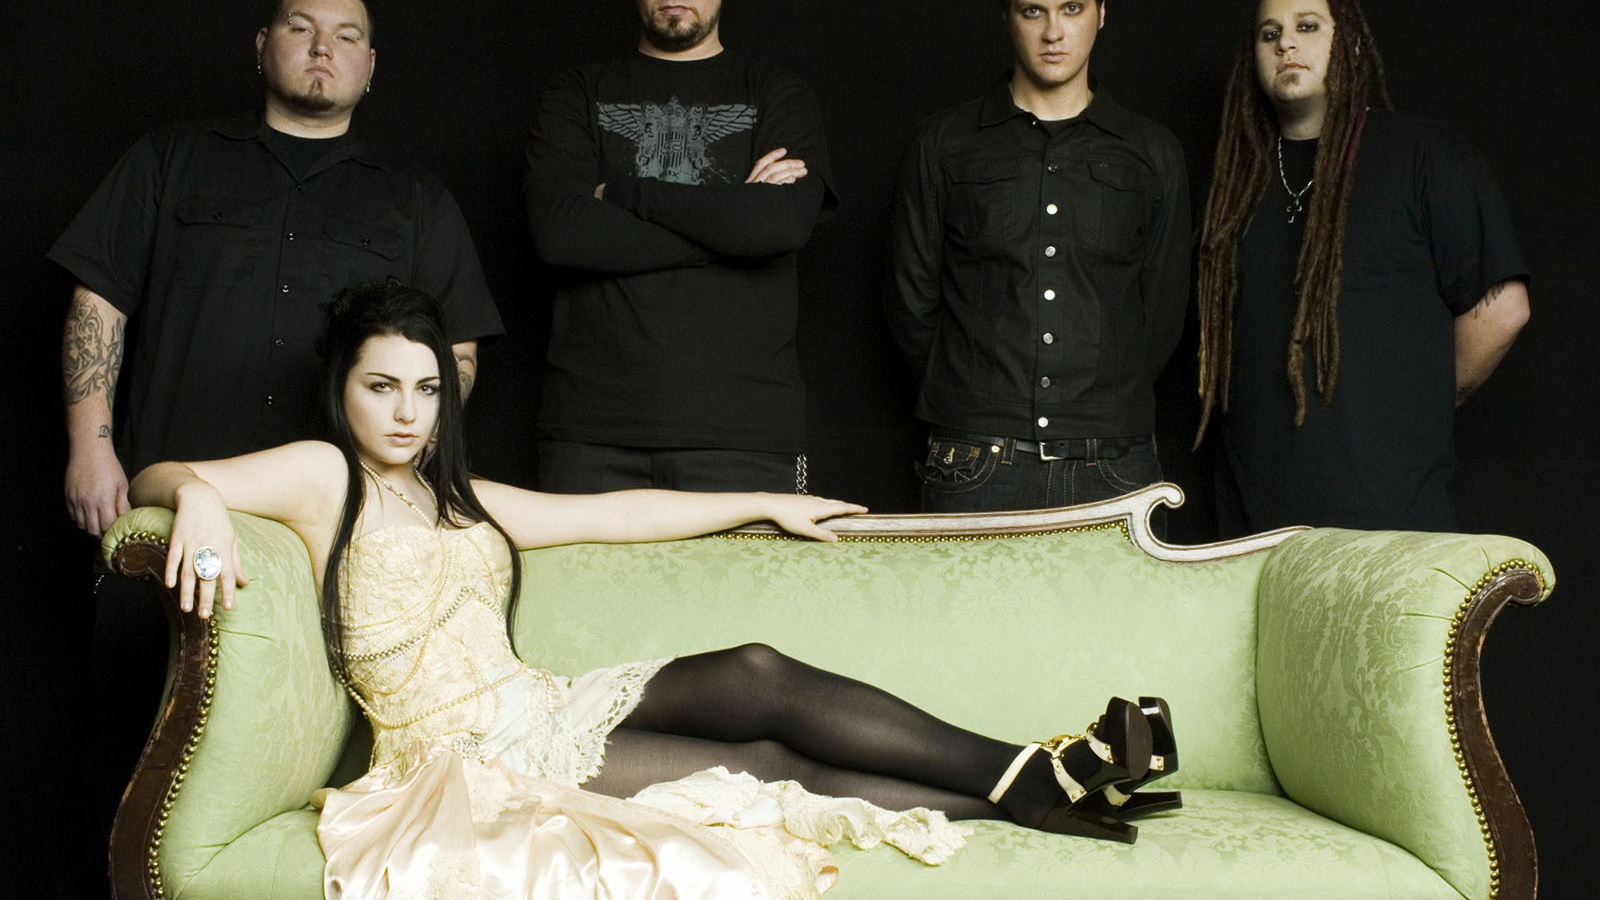 Evanescence на диване